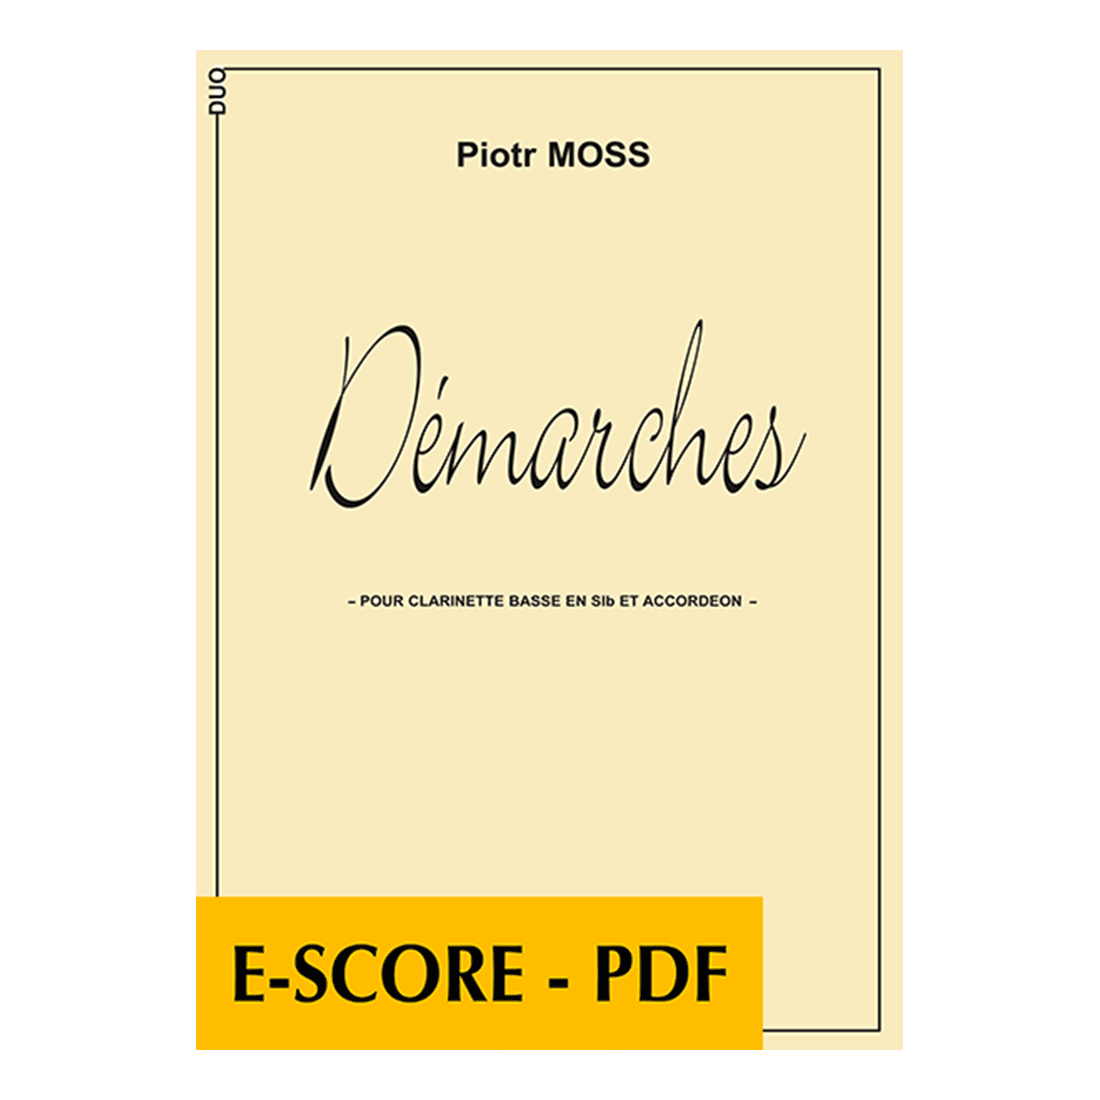 Démarches pour clarinette basse et accordéon - E-score PDF